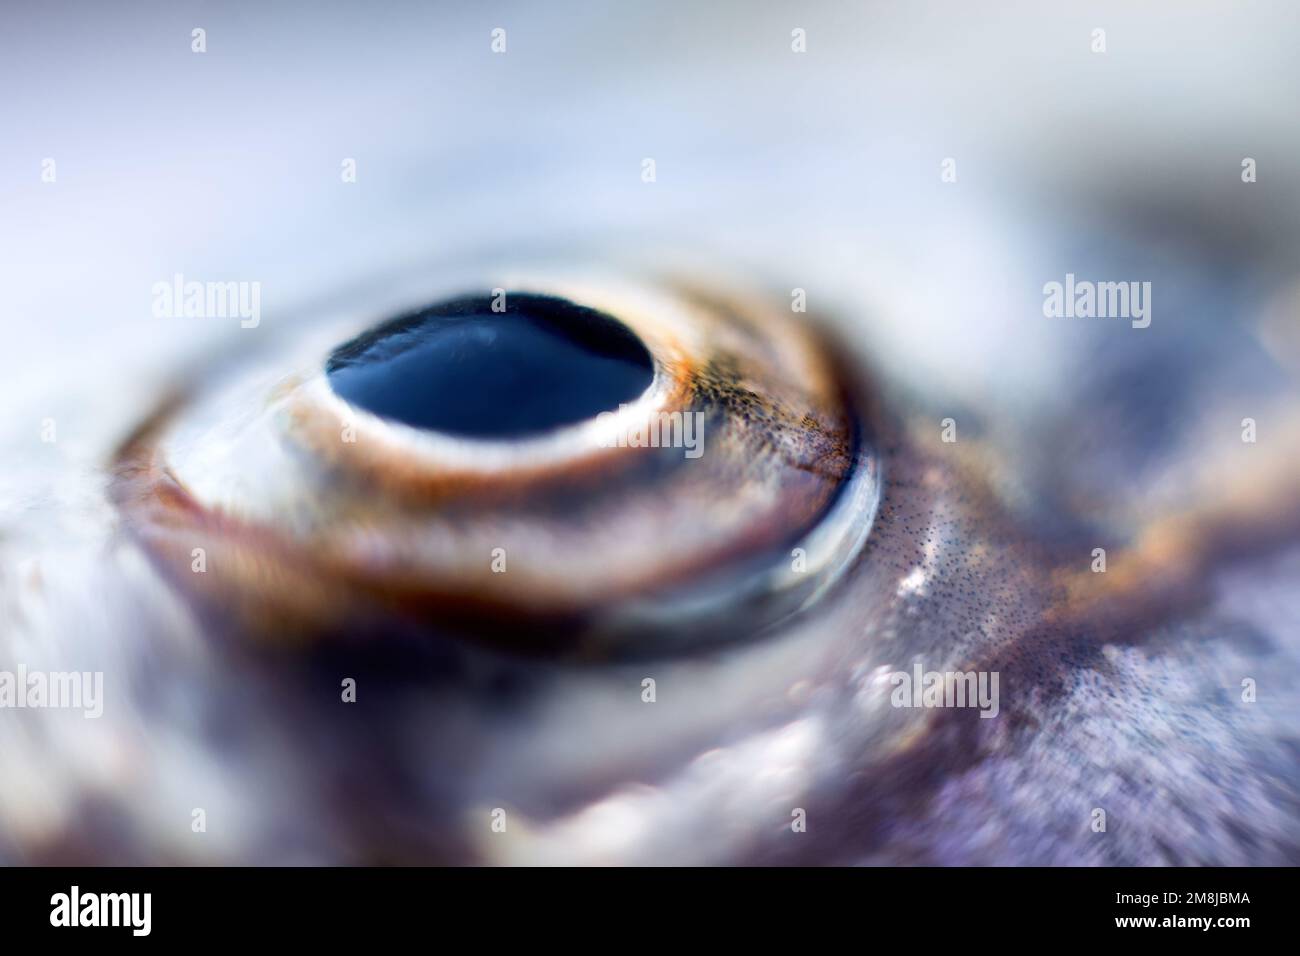 Anatomie du poisson. Gros plan de l'œil Sabrefish (Pelecus cultratus) Banque D'Images